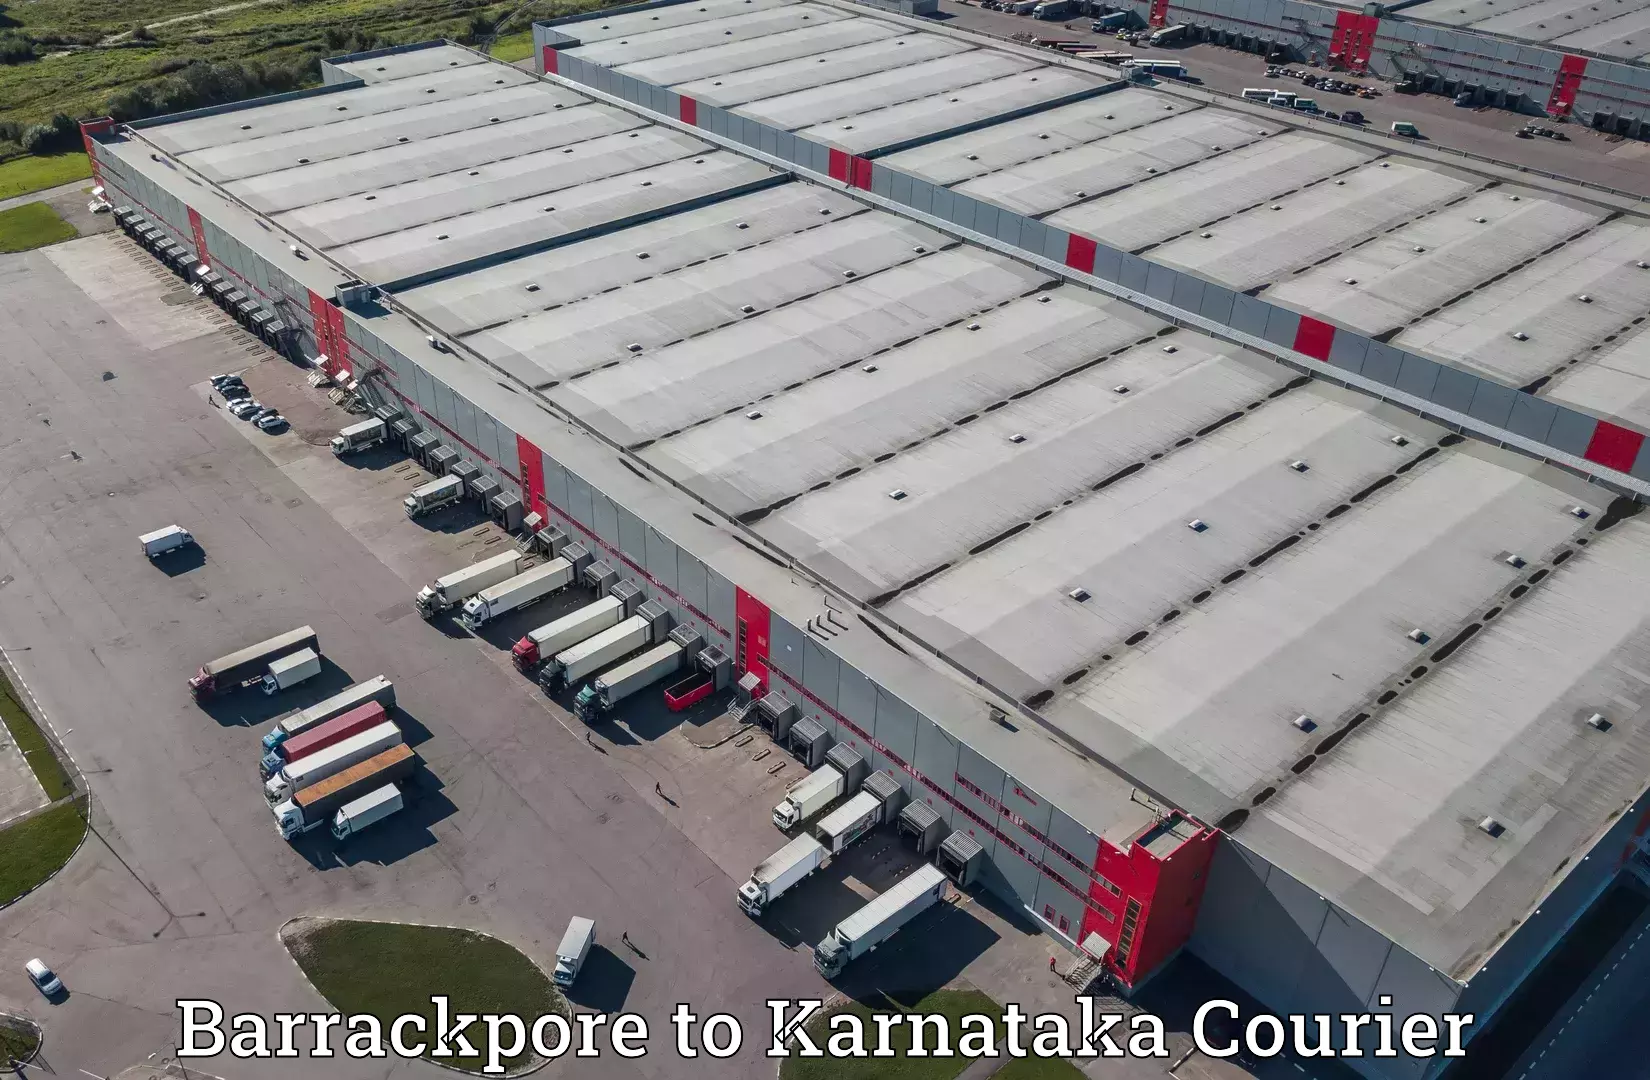 On-demand shipping options Barrackpore to Kalaburagi